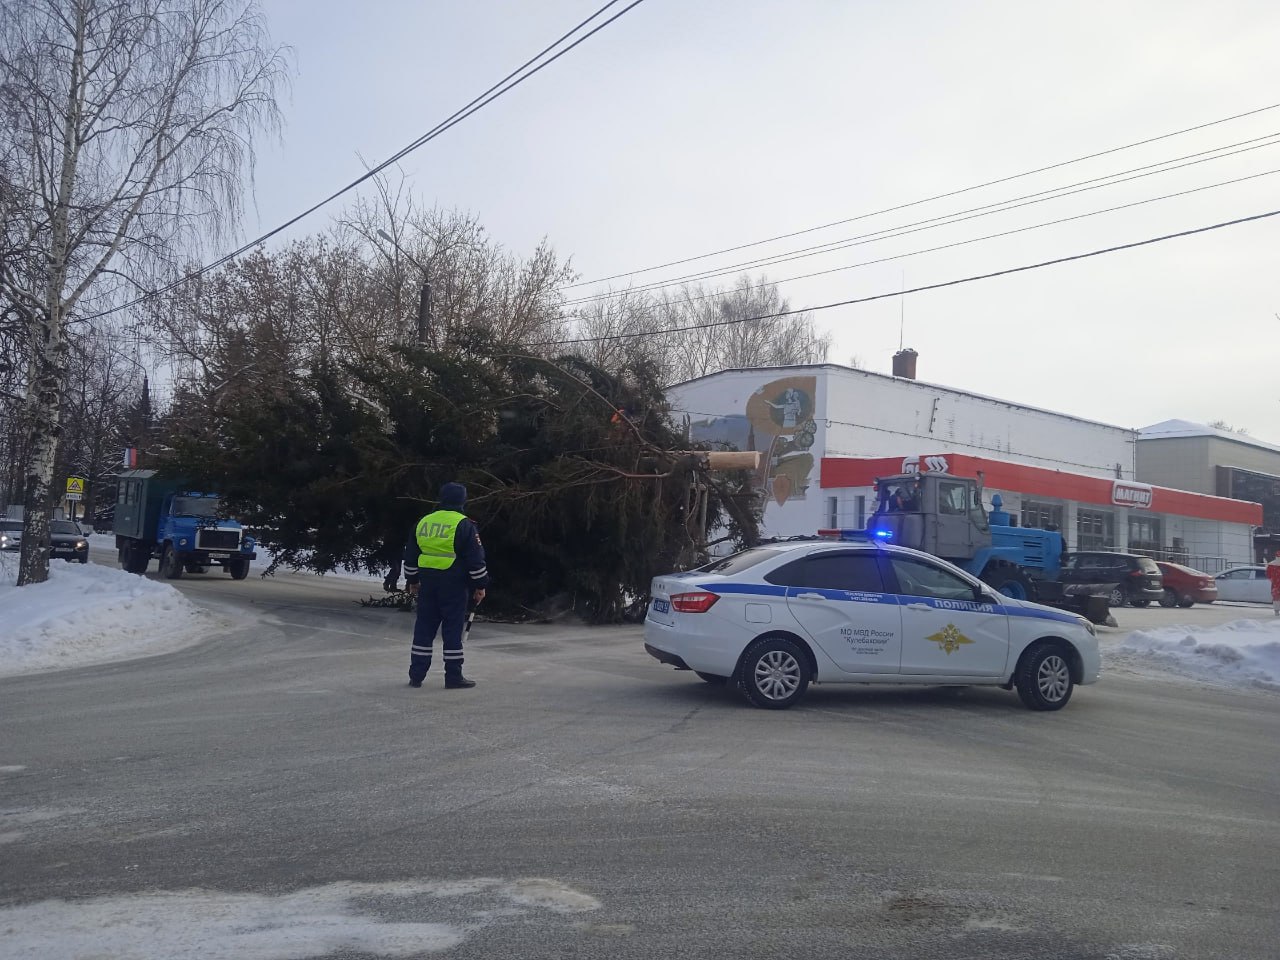 Чиновники опять срубили елку, которую посадила местная жительница, на этот раз в Нижегородской области. Дерево поставили у ДК 